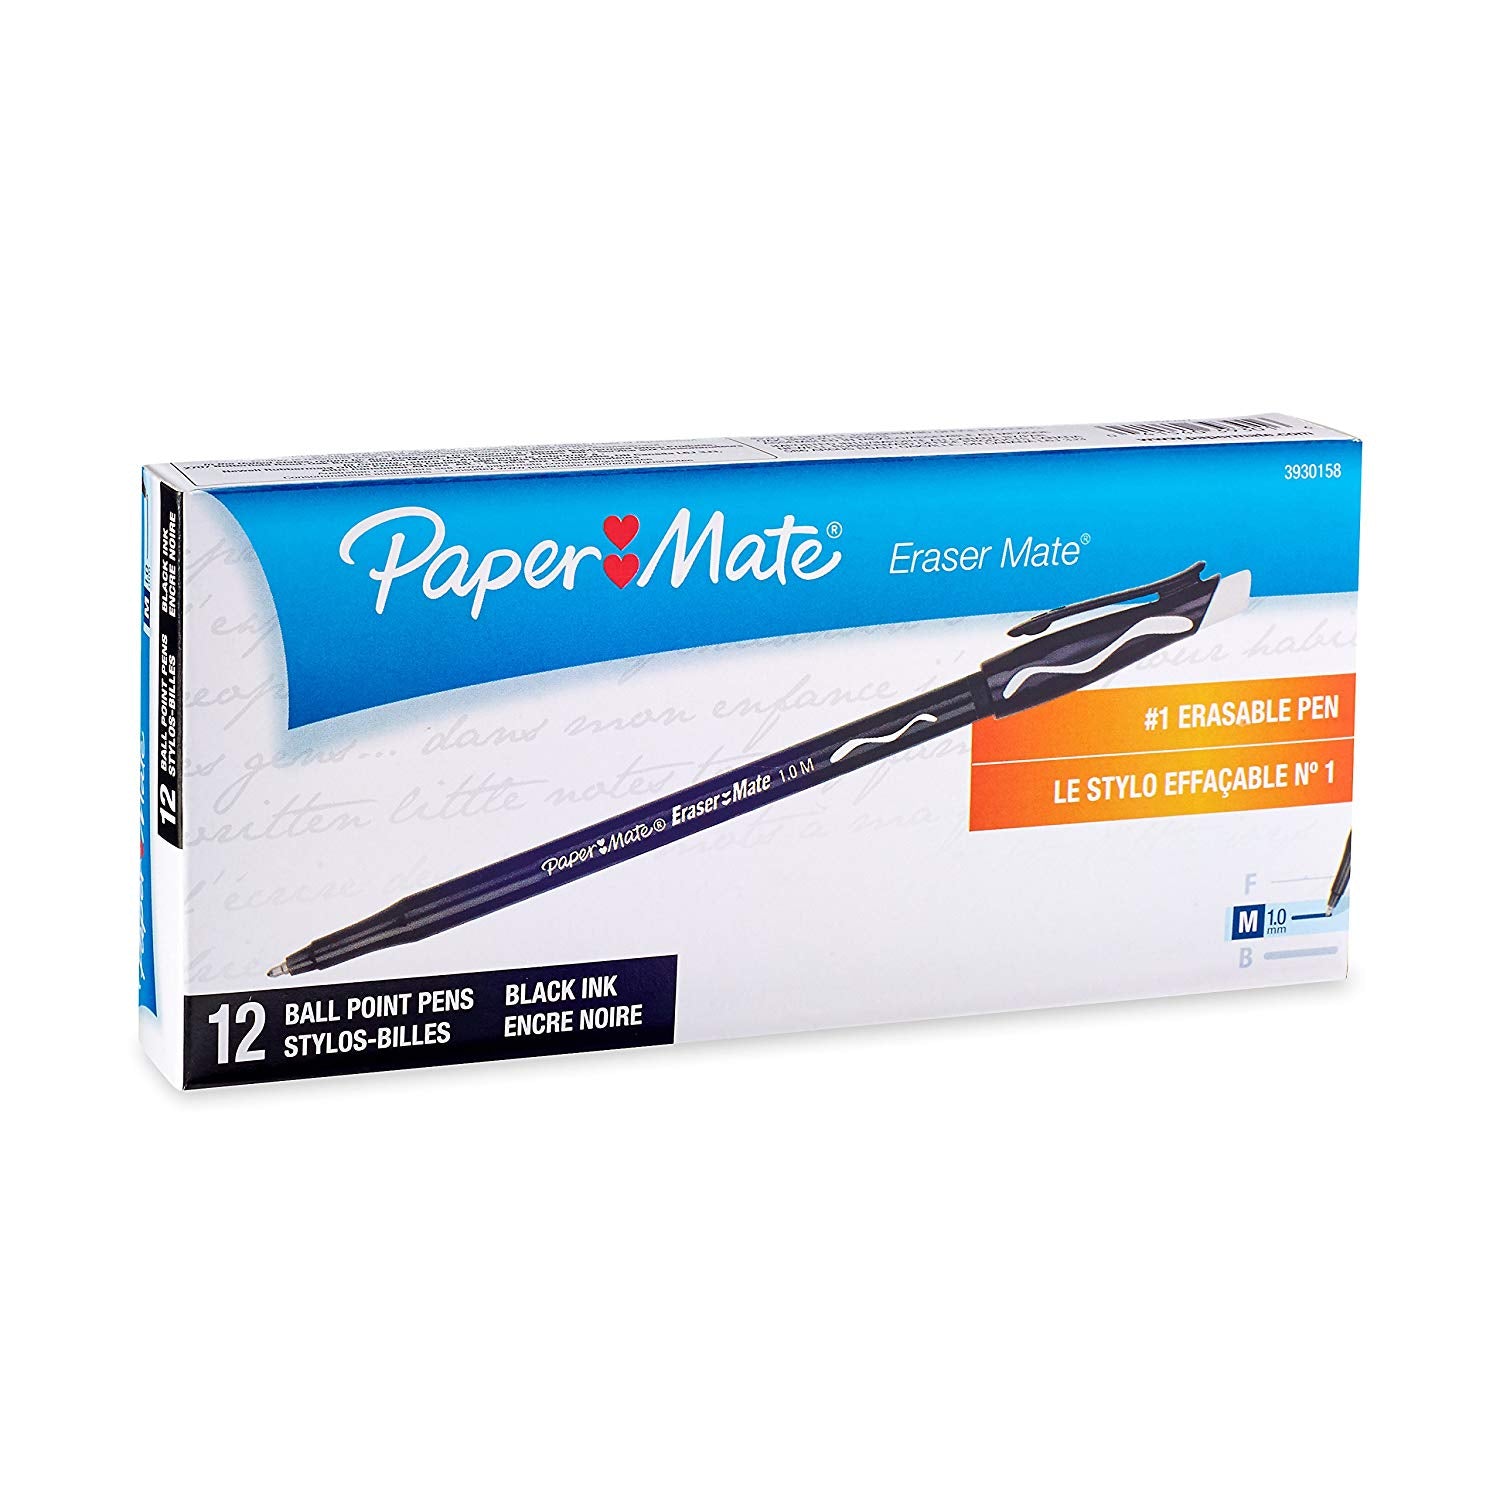 Paper Mate Eraser Mate Erasable Pen, Medium Point, Black, 12-Count